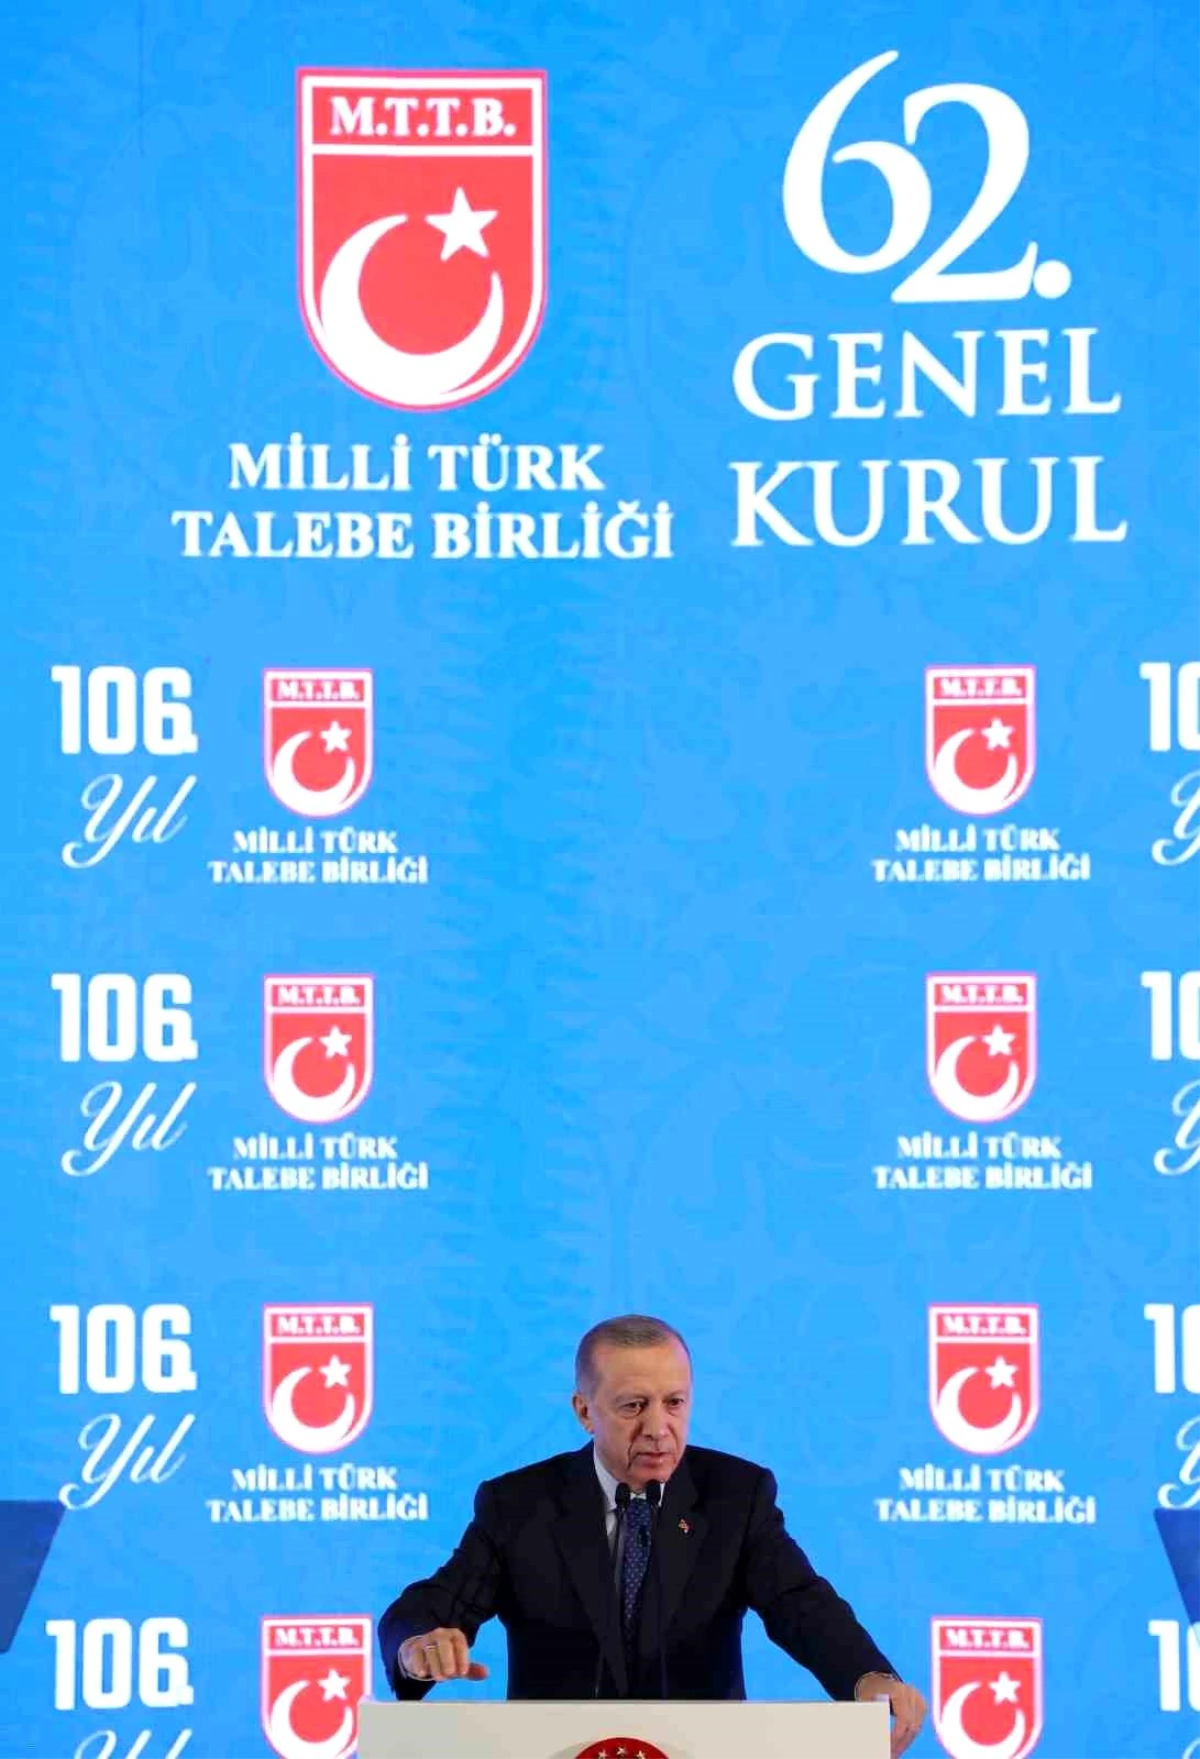 Cumhurbaşkanı Erdoğan, Milli Türk Talebe Birliği Genel Kurulunda konuştu: (1)